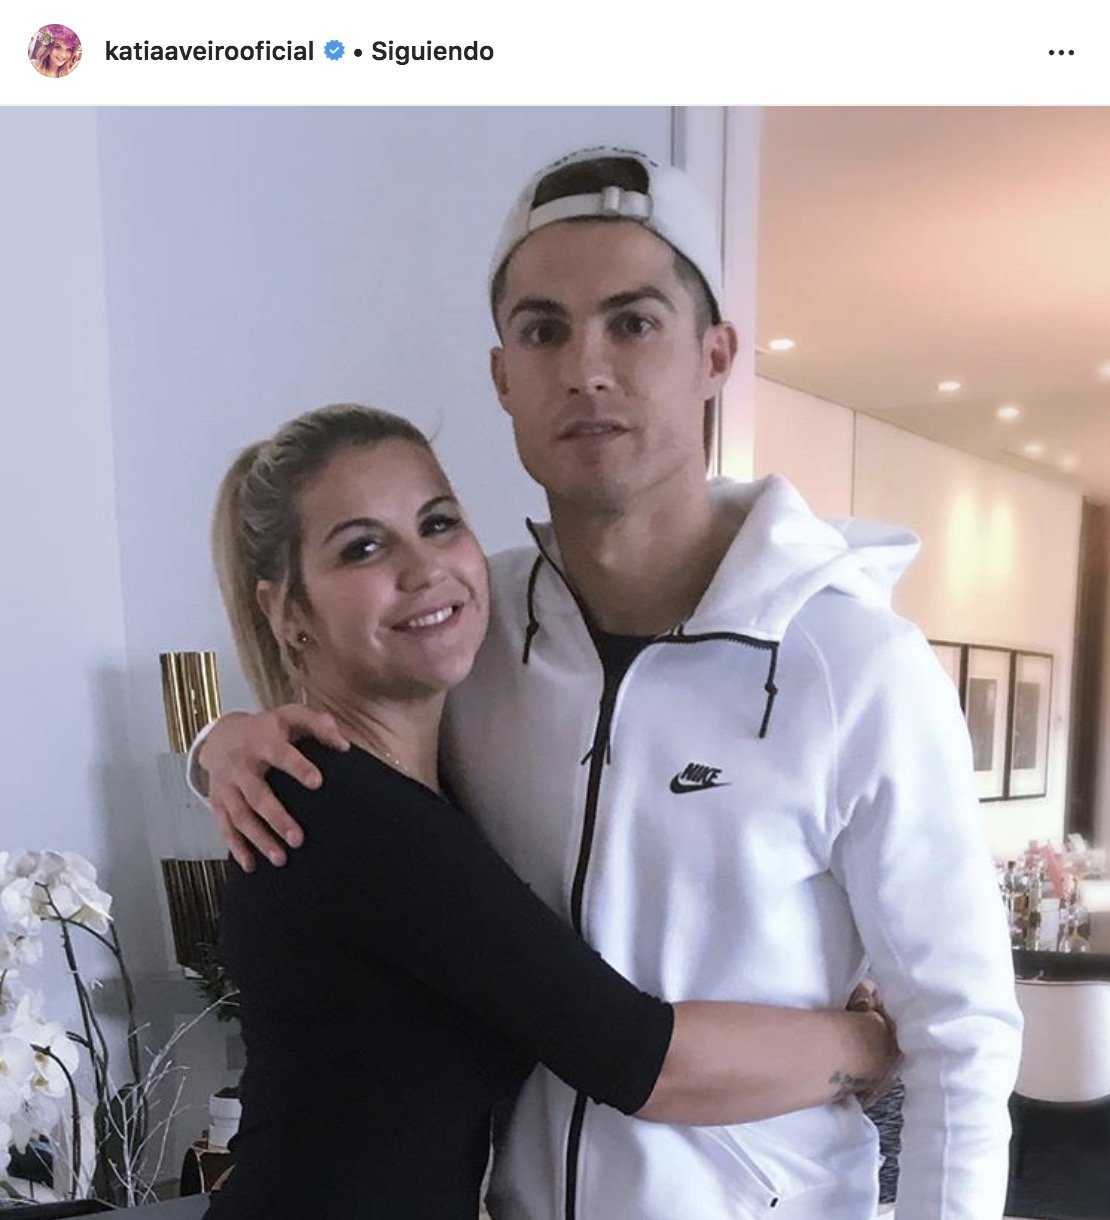 Mensaje de Katia Aveiro a Cristiano Ronaldo y al Real Madrid Foto: Instagram (@katiaaveirooficial)